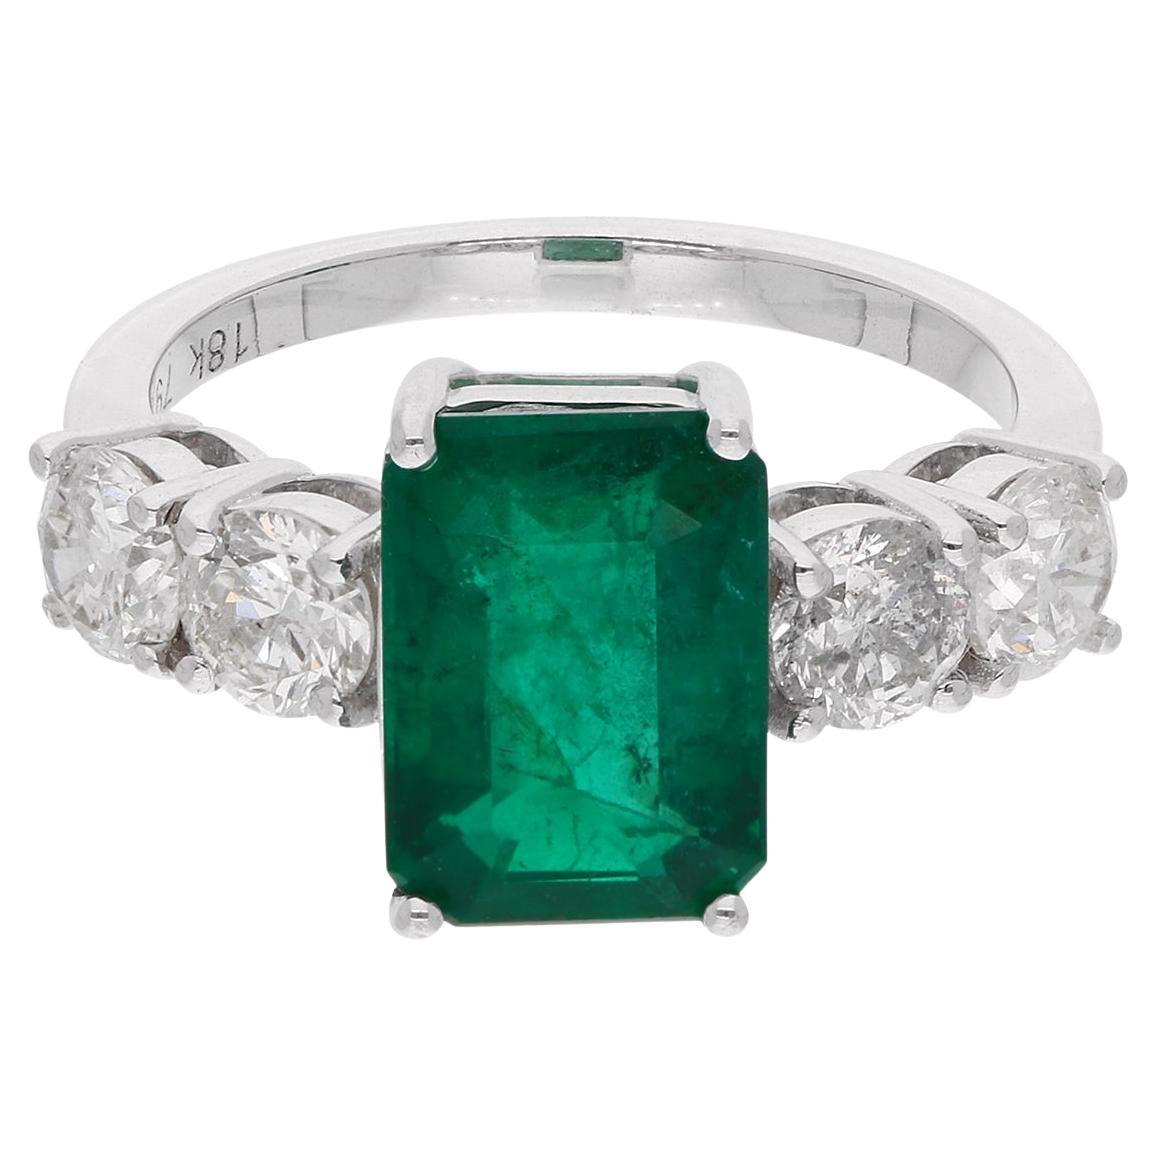 Natural Emerald Gemstone Ring Diamond 18 Karat White Gold Handmade Fine Jewelry